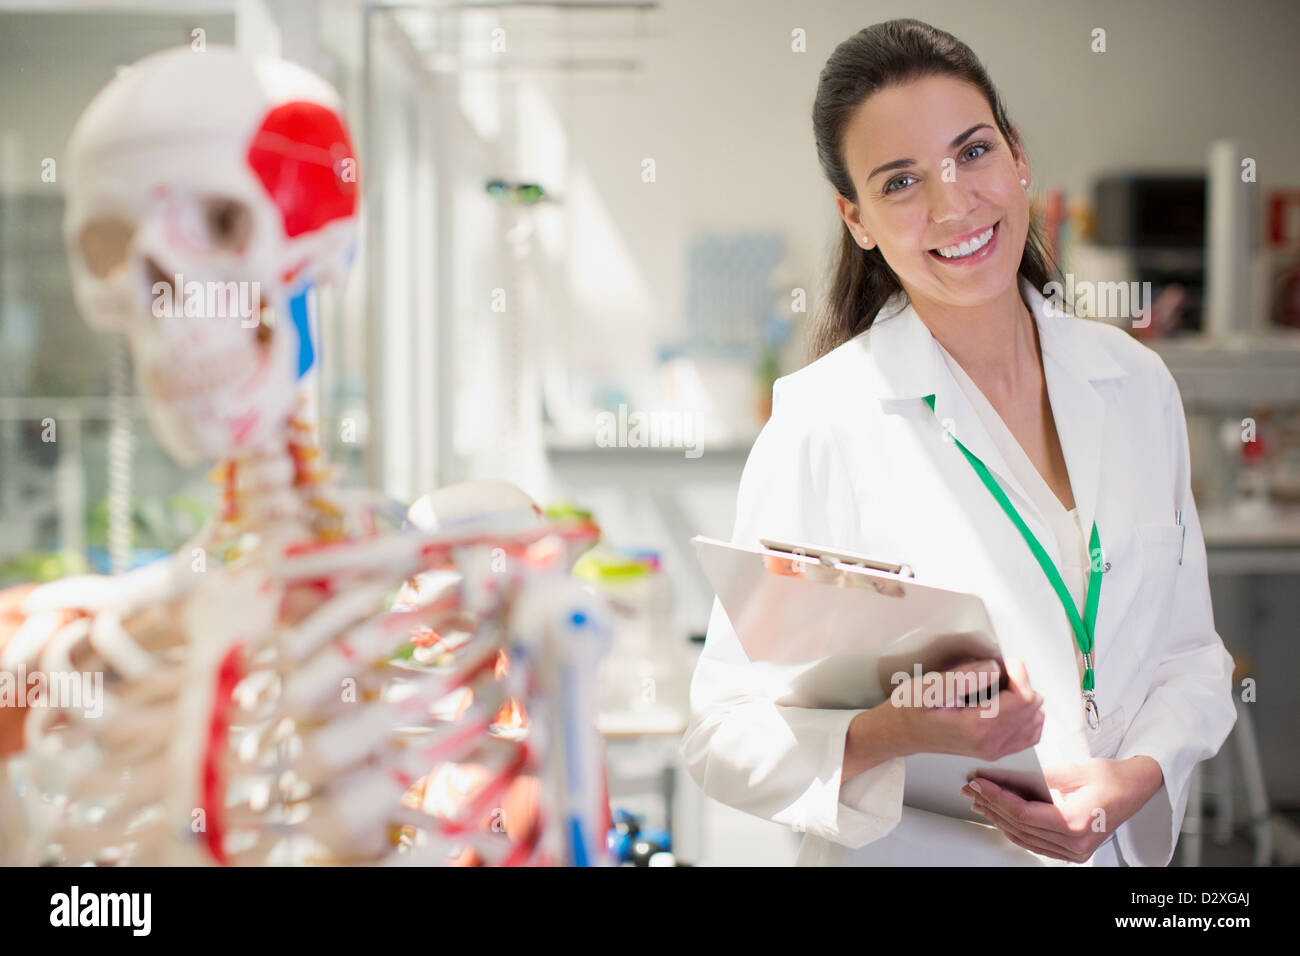 Porträt von lächelnden Wissenschaftler mit anatomischen Modells und Zwischenablage im Labor Stockfoto